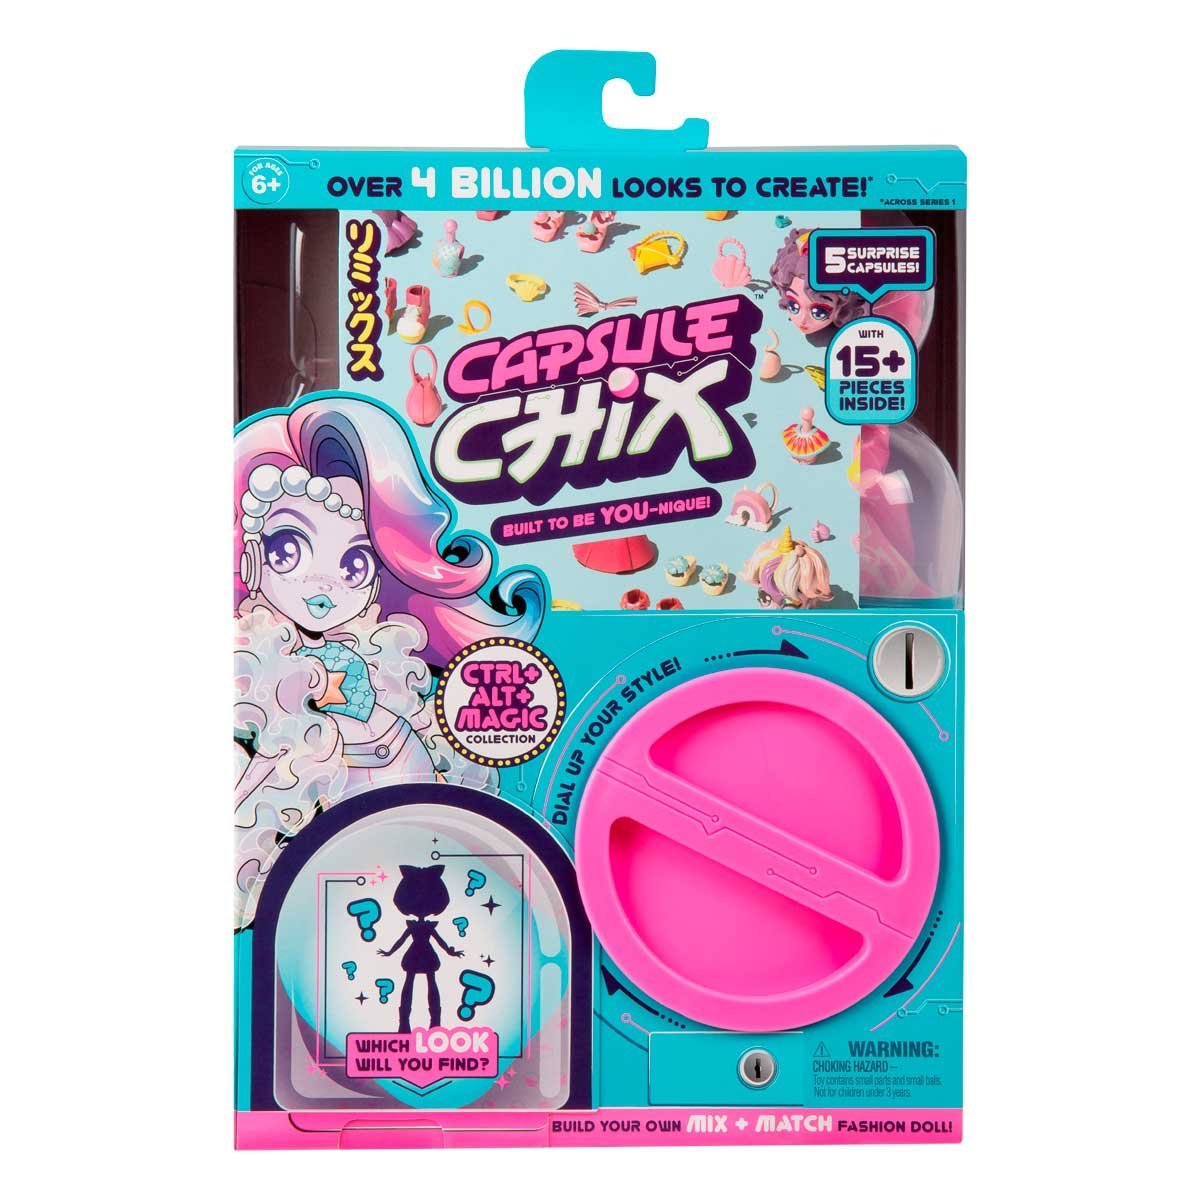 Capsule Chix Ctrl + Alt + Magic  Mattel